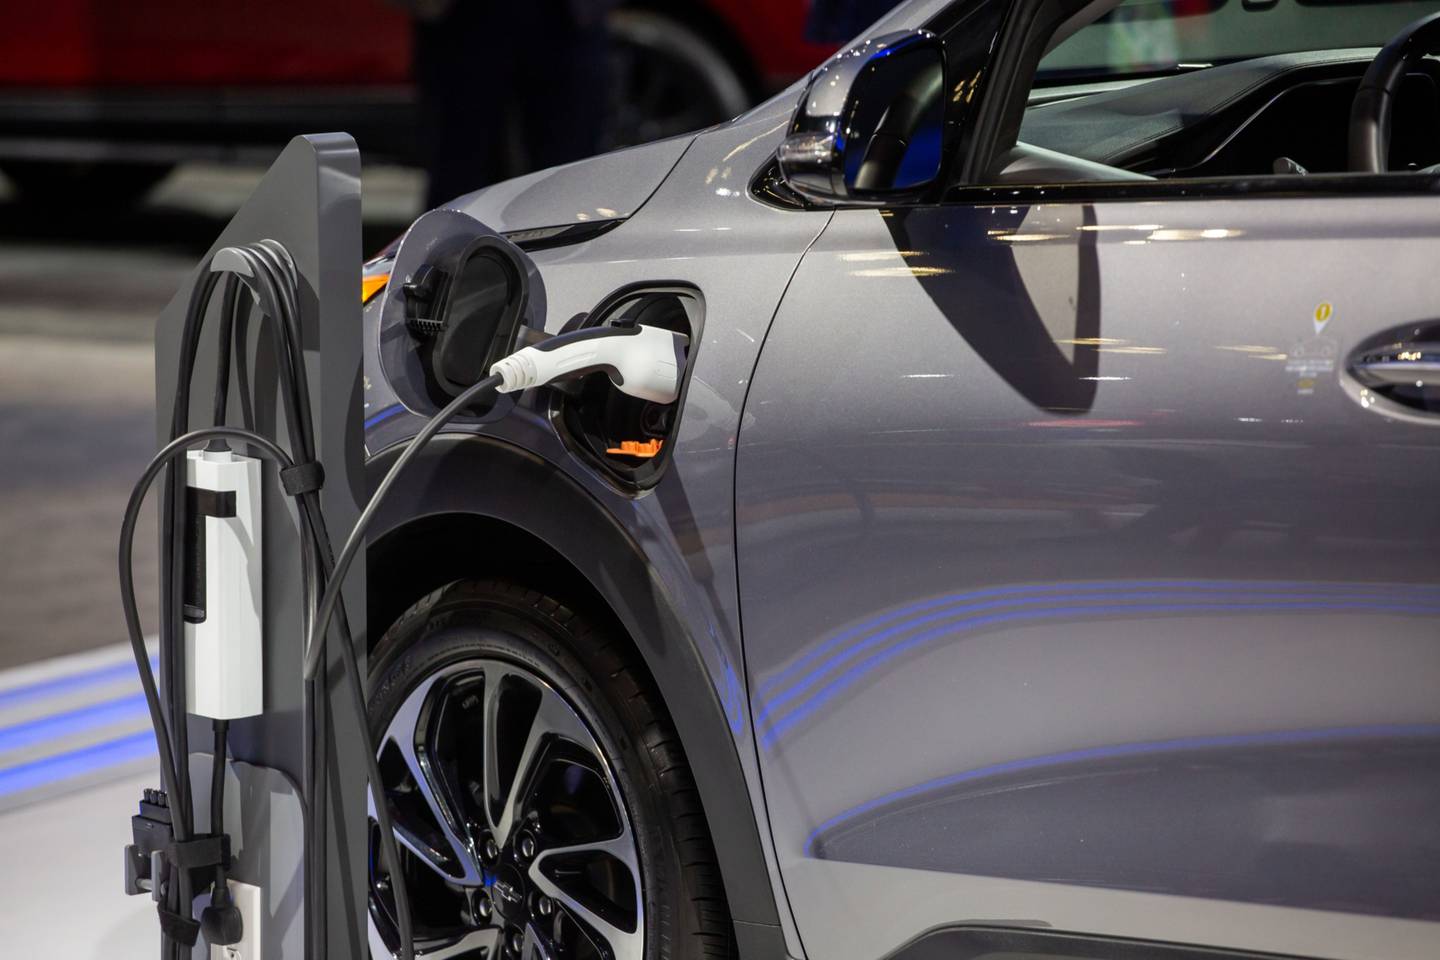 El puerto de carga de un vehículo utilitario eléctrico (VUE) Chevrolet Bolt durante el Salón Internacional del Automóvil de Nueva York (NYIAS) de 2022 en Nueva York, Estados Unidos, el jueves 14 de abril de 2022.